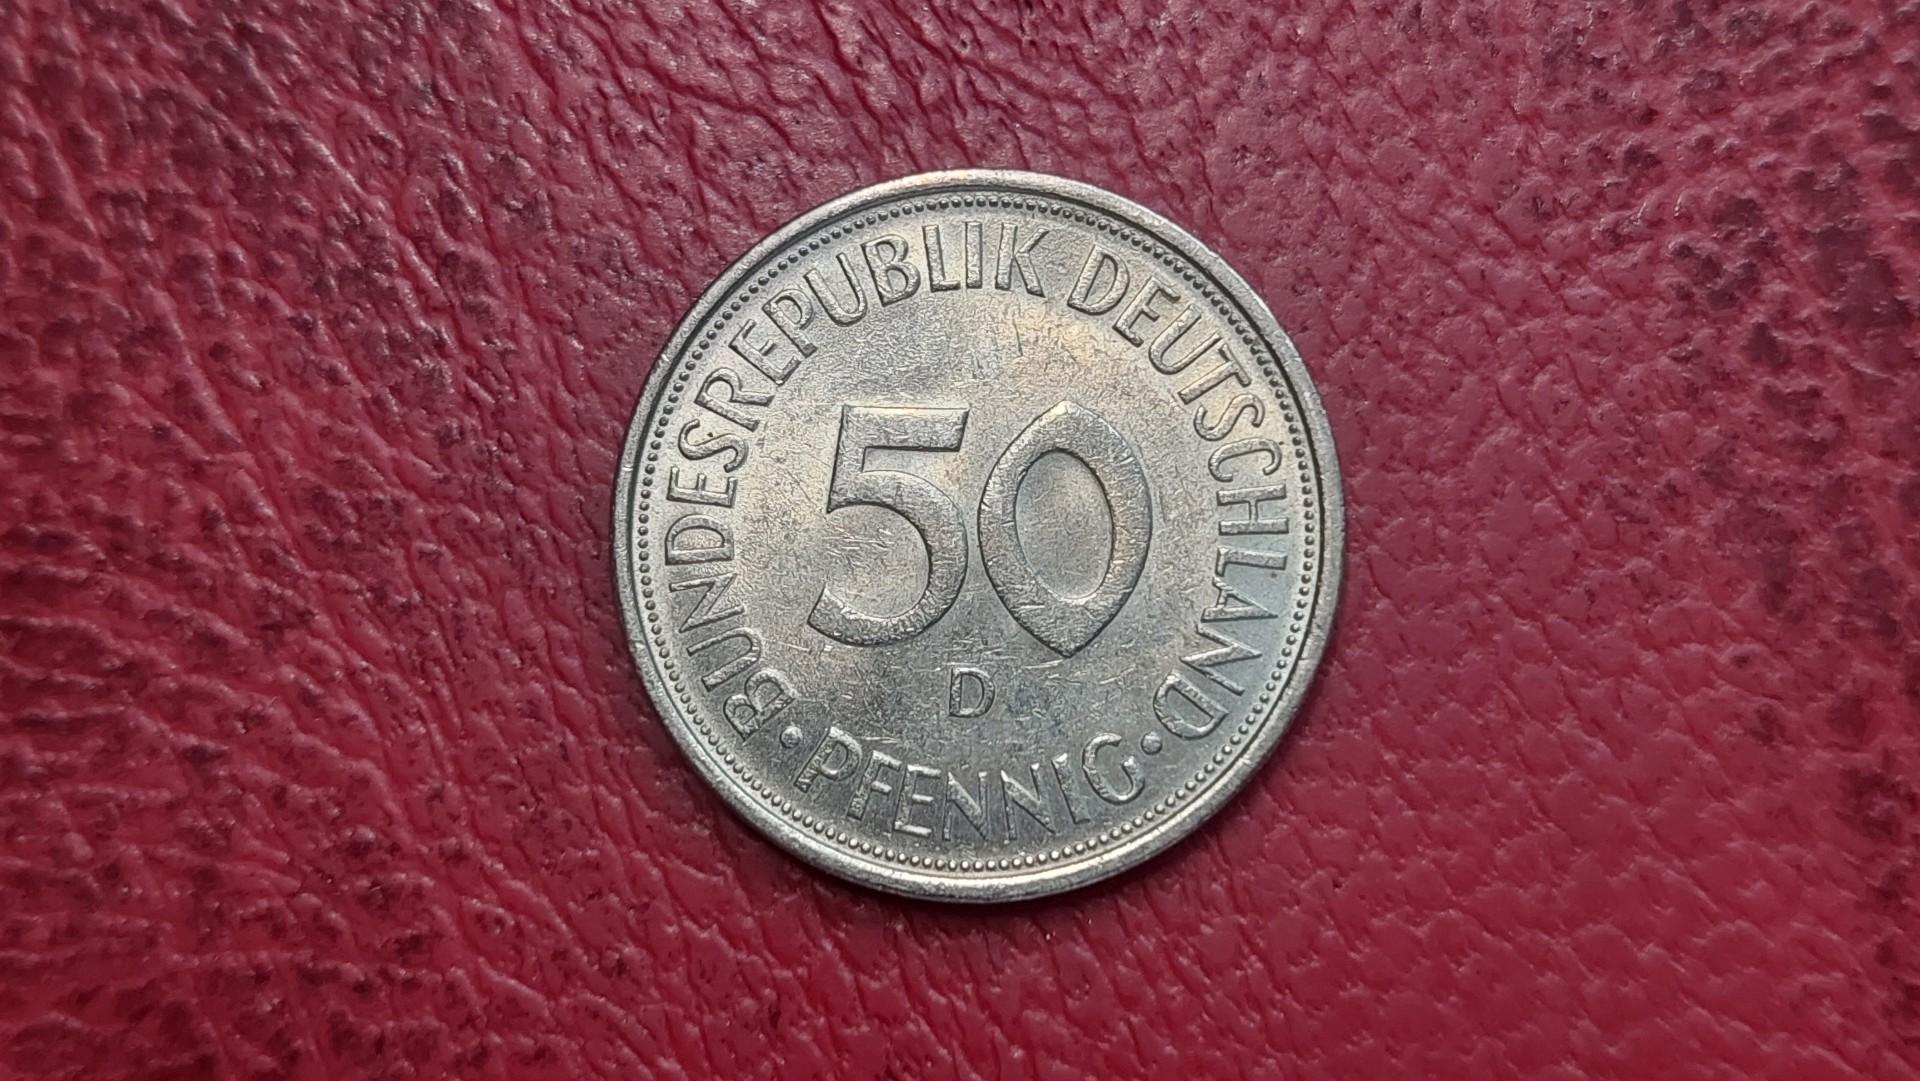 Vokietija 50 pfenigų, 1972D KM# 109